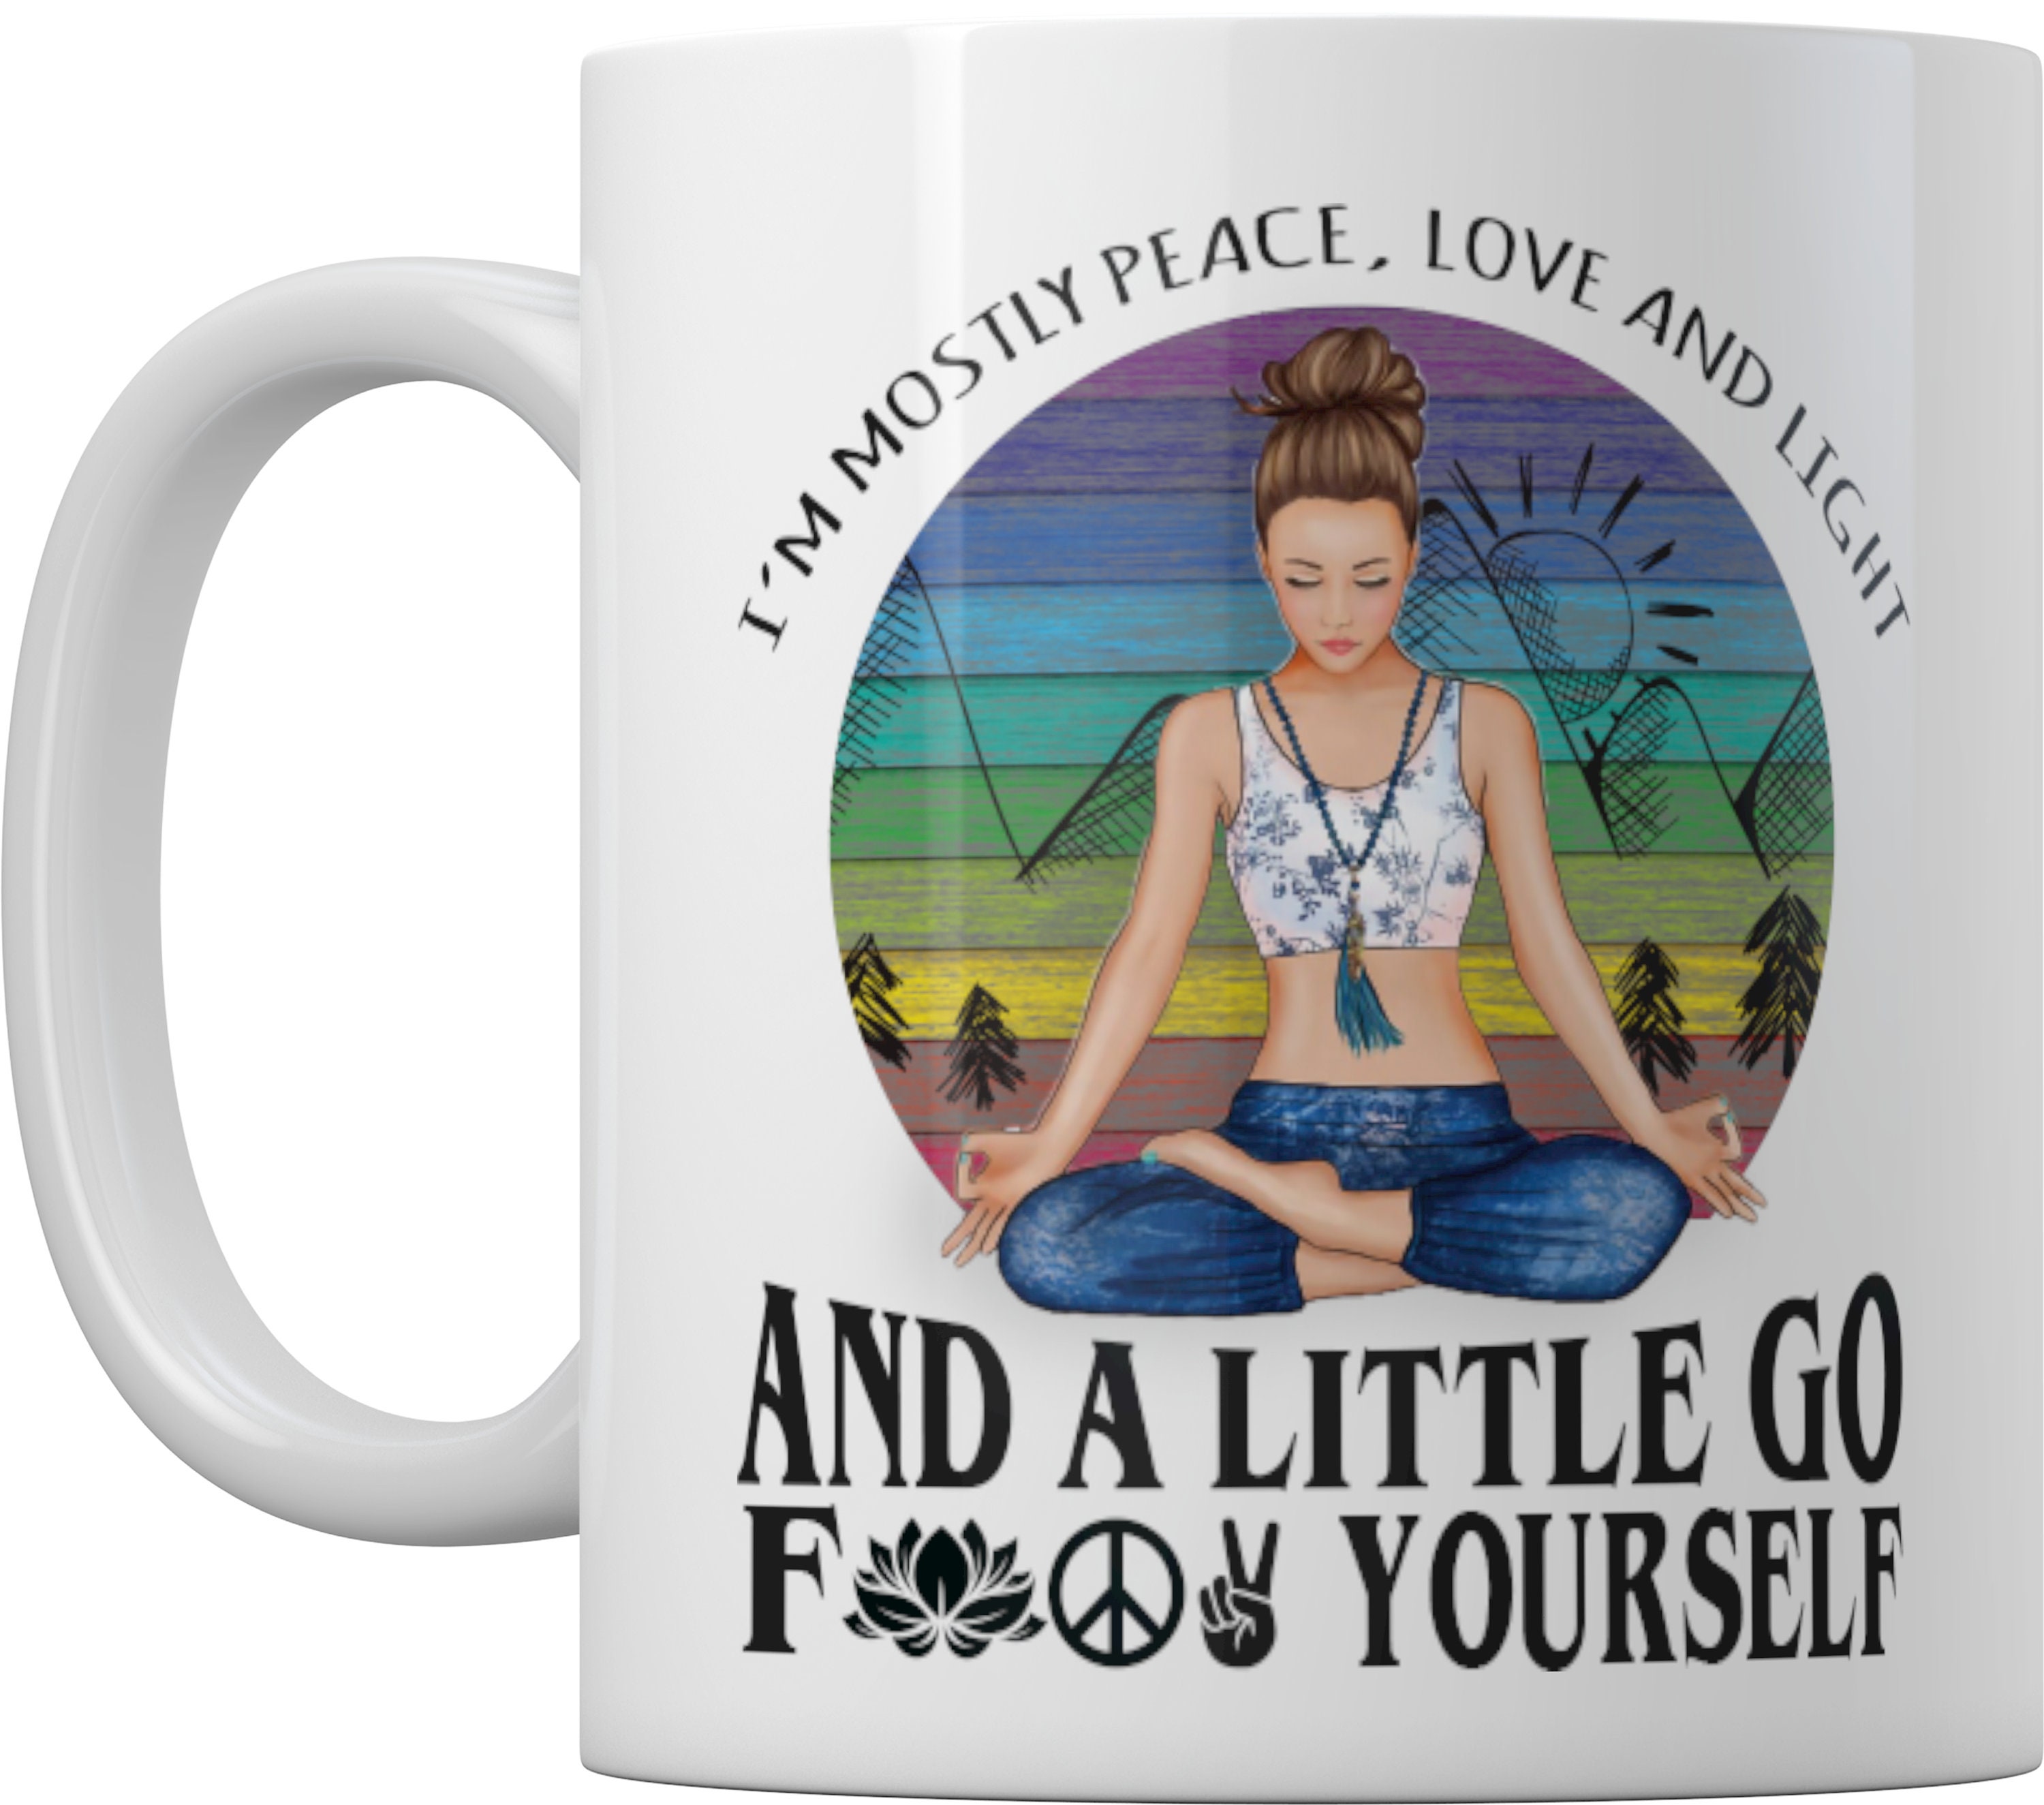 Im Mostly Peace, Love and Light Yoga Mug, Funny Yoga Mug, Gift for Yoga  Teacher, Yoga Lover Gifts, Coffee Mugs, Birthday Gift for Yogi -  Canada